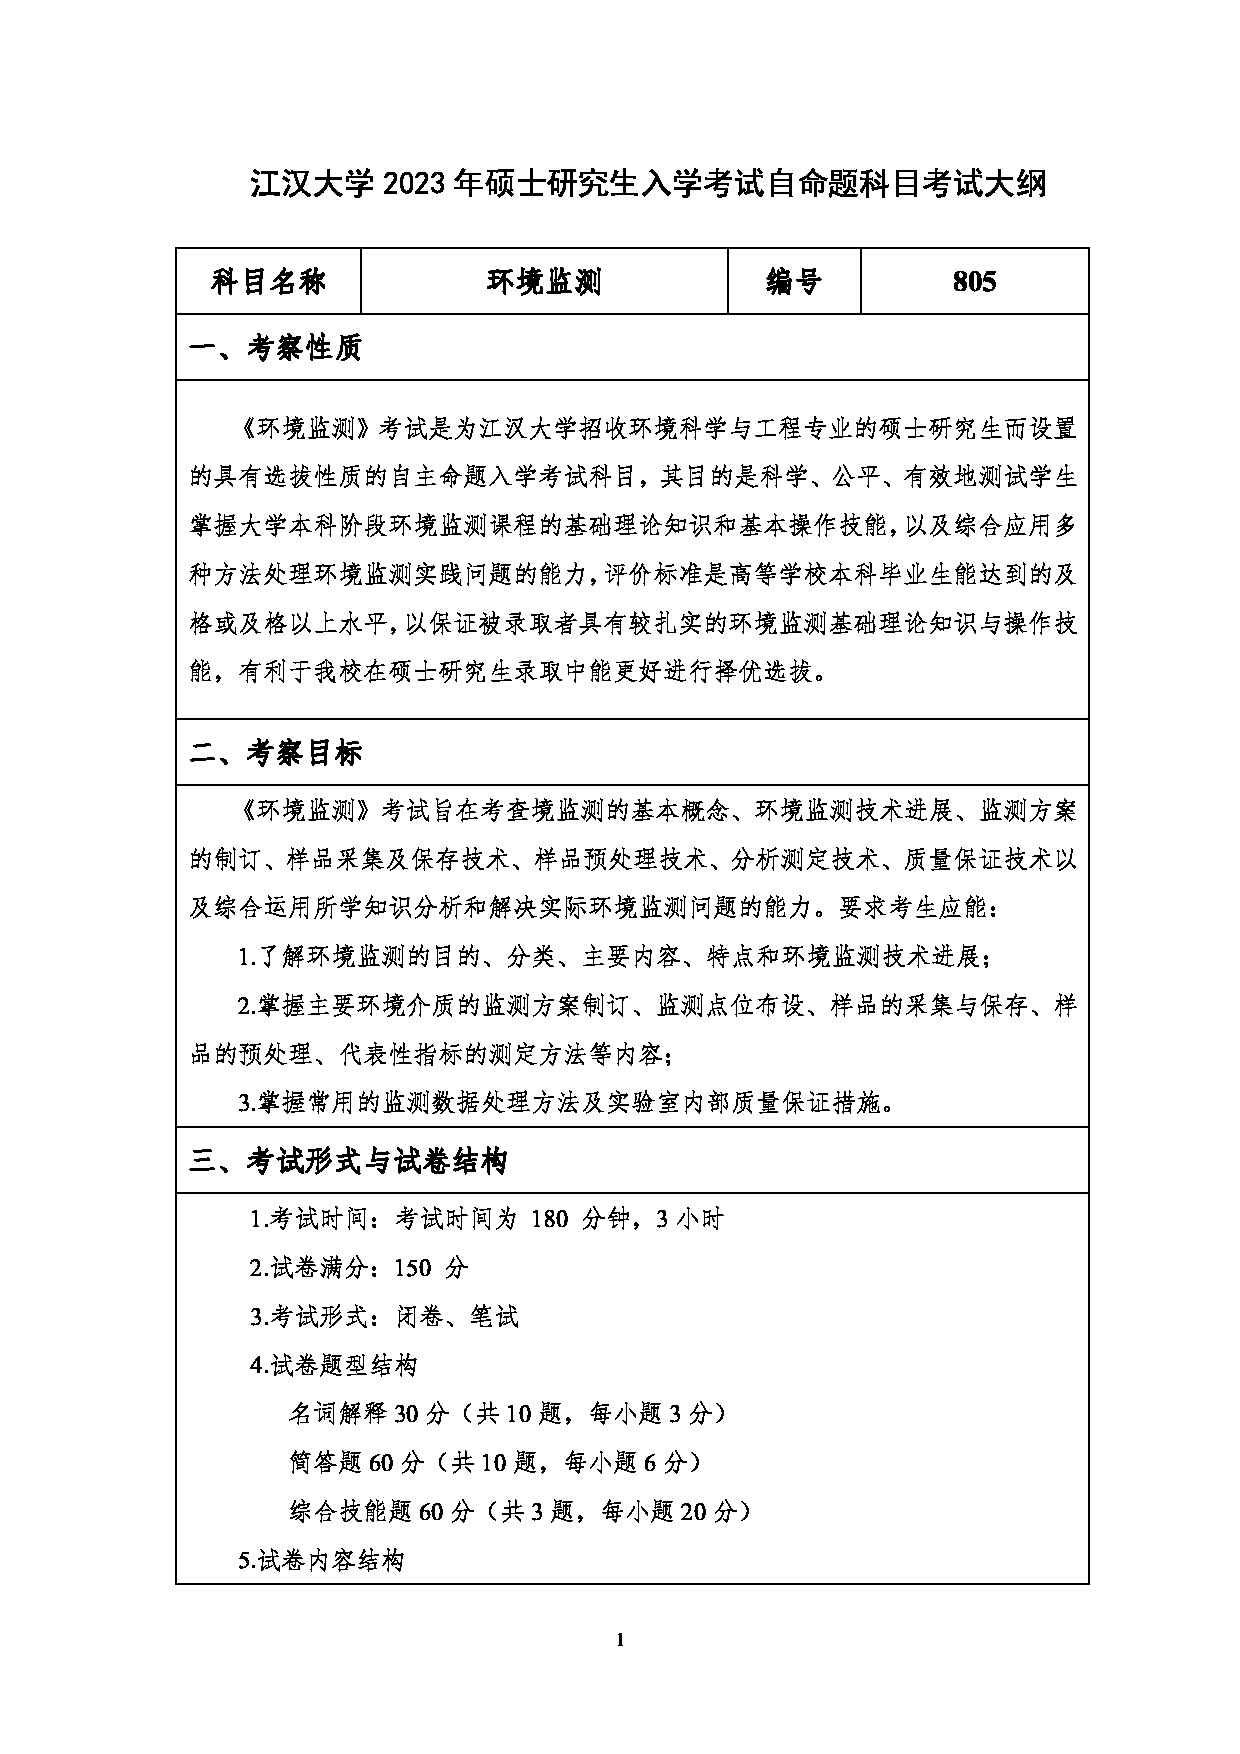 2023考研大纲：江汉大学2023年考研自命题科目 805环境监测 考试大纲第1页